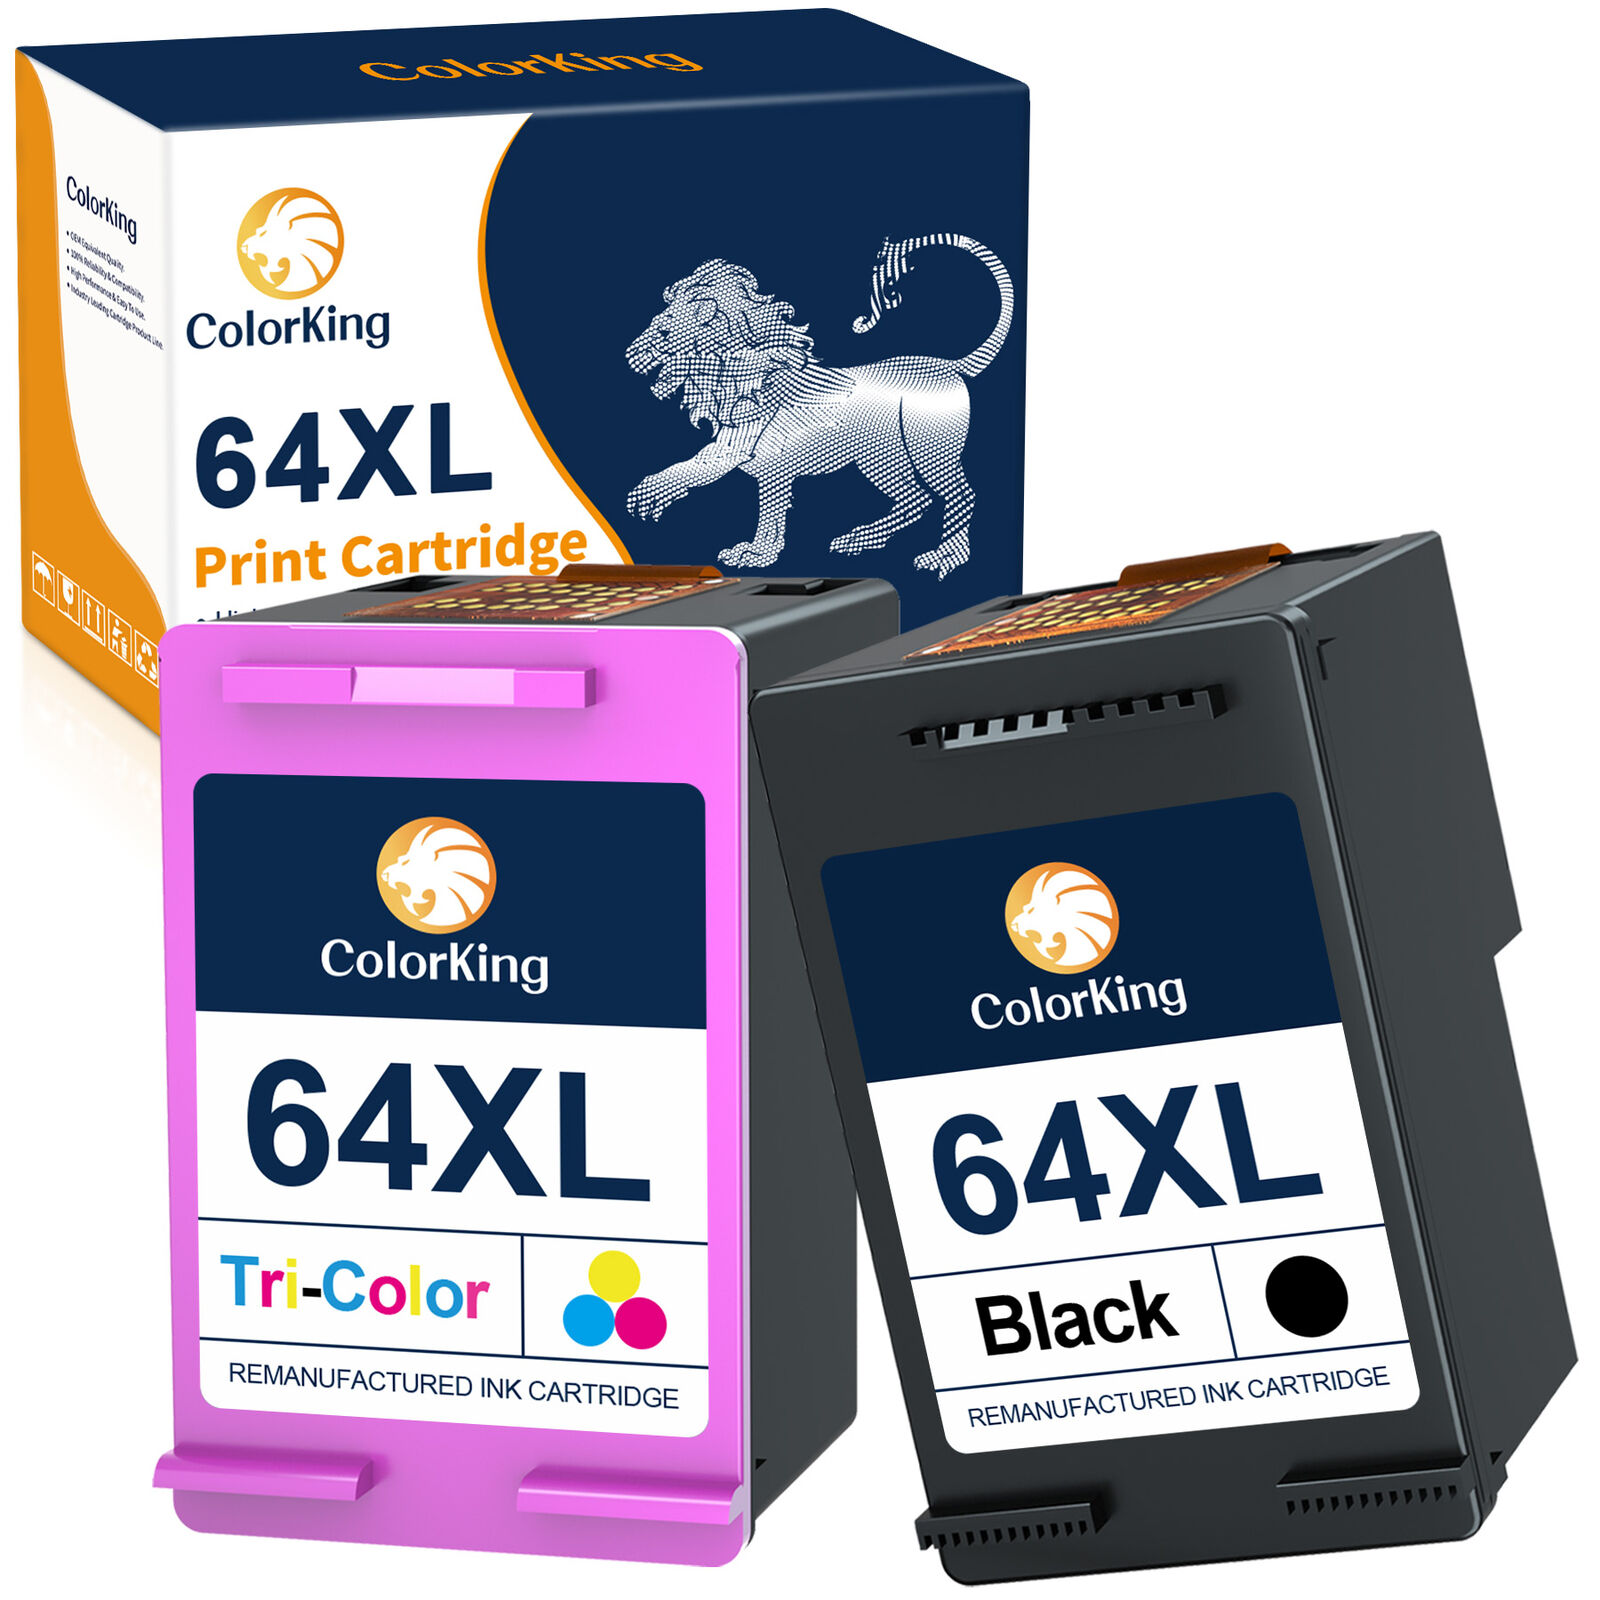 64XL Black Color Ink Cartridge 64 XLfor HP Envy 7155 7158 7855 7858 Printers